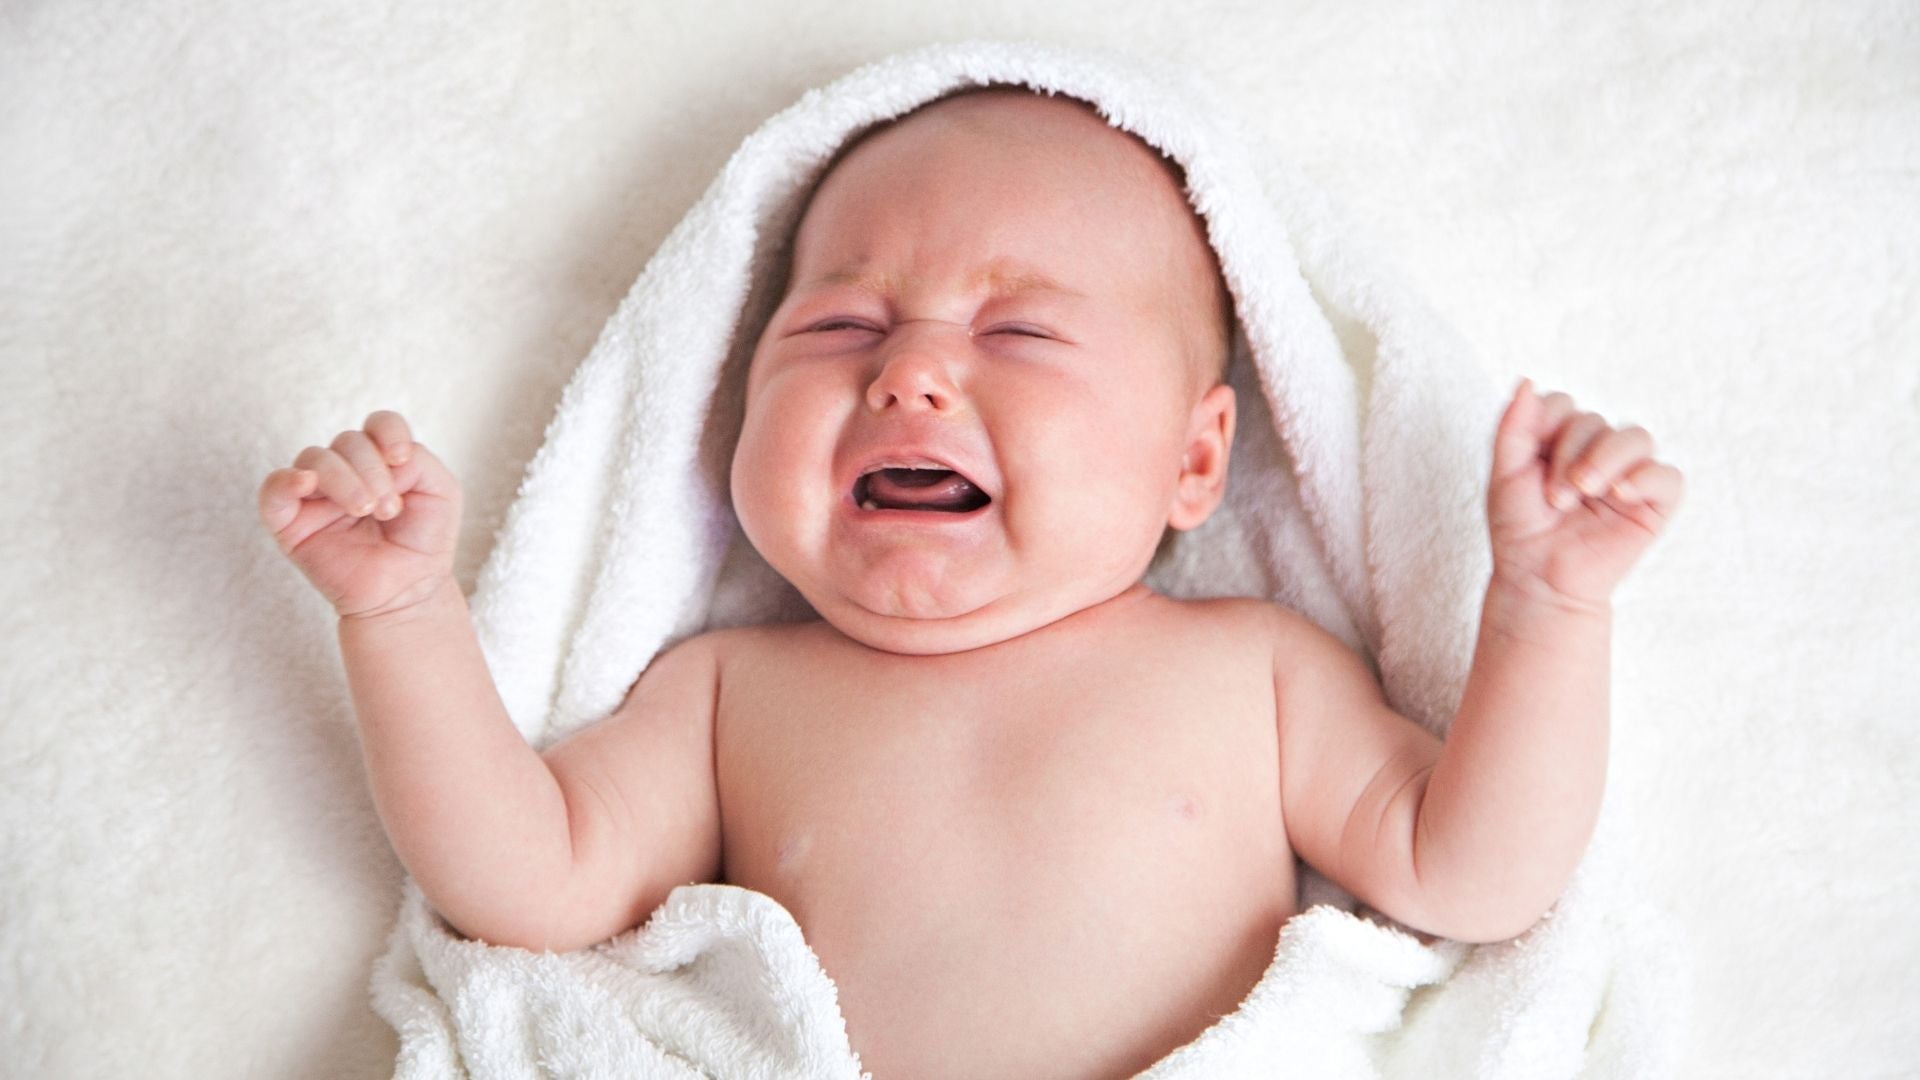 Quelle bouillotte bébé pour soulager les coliques ? – Peignoir Avenue